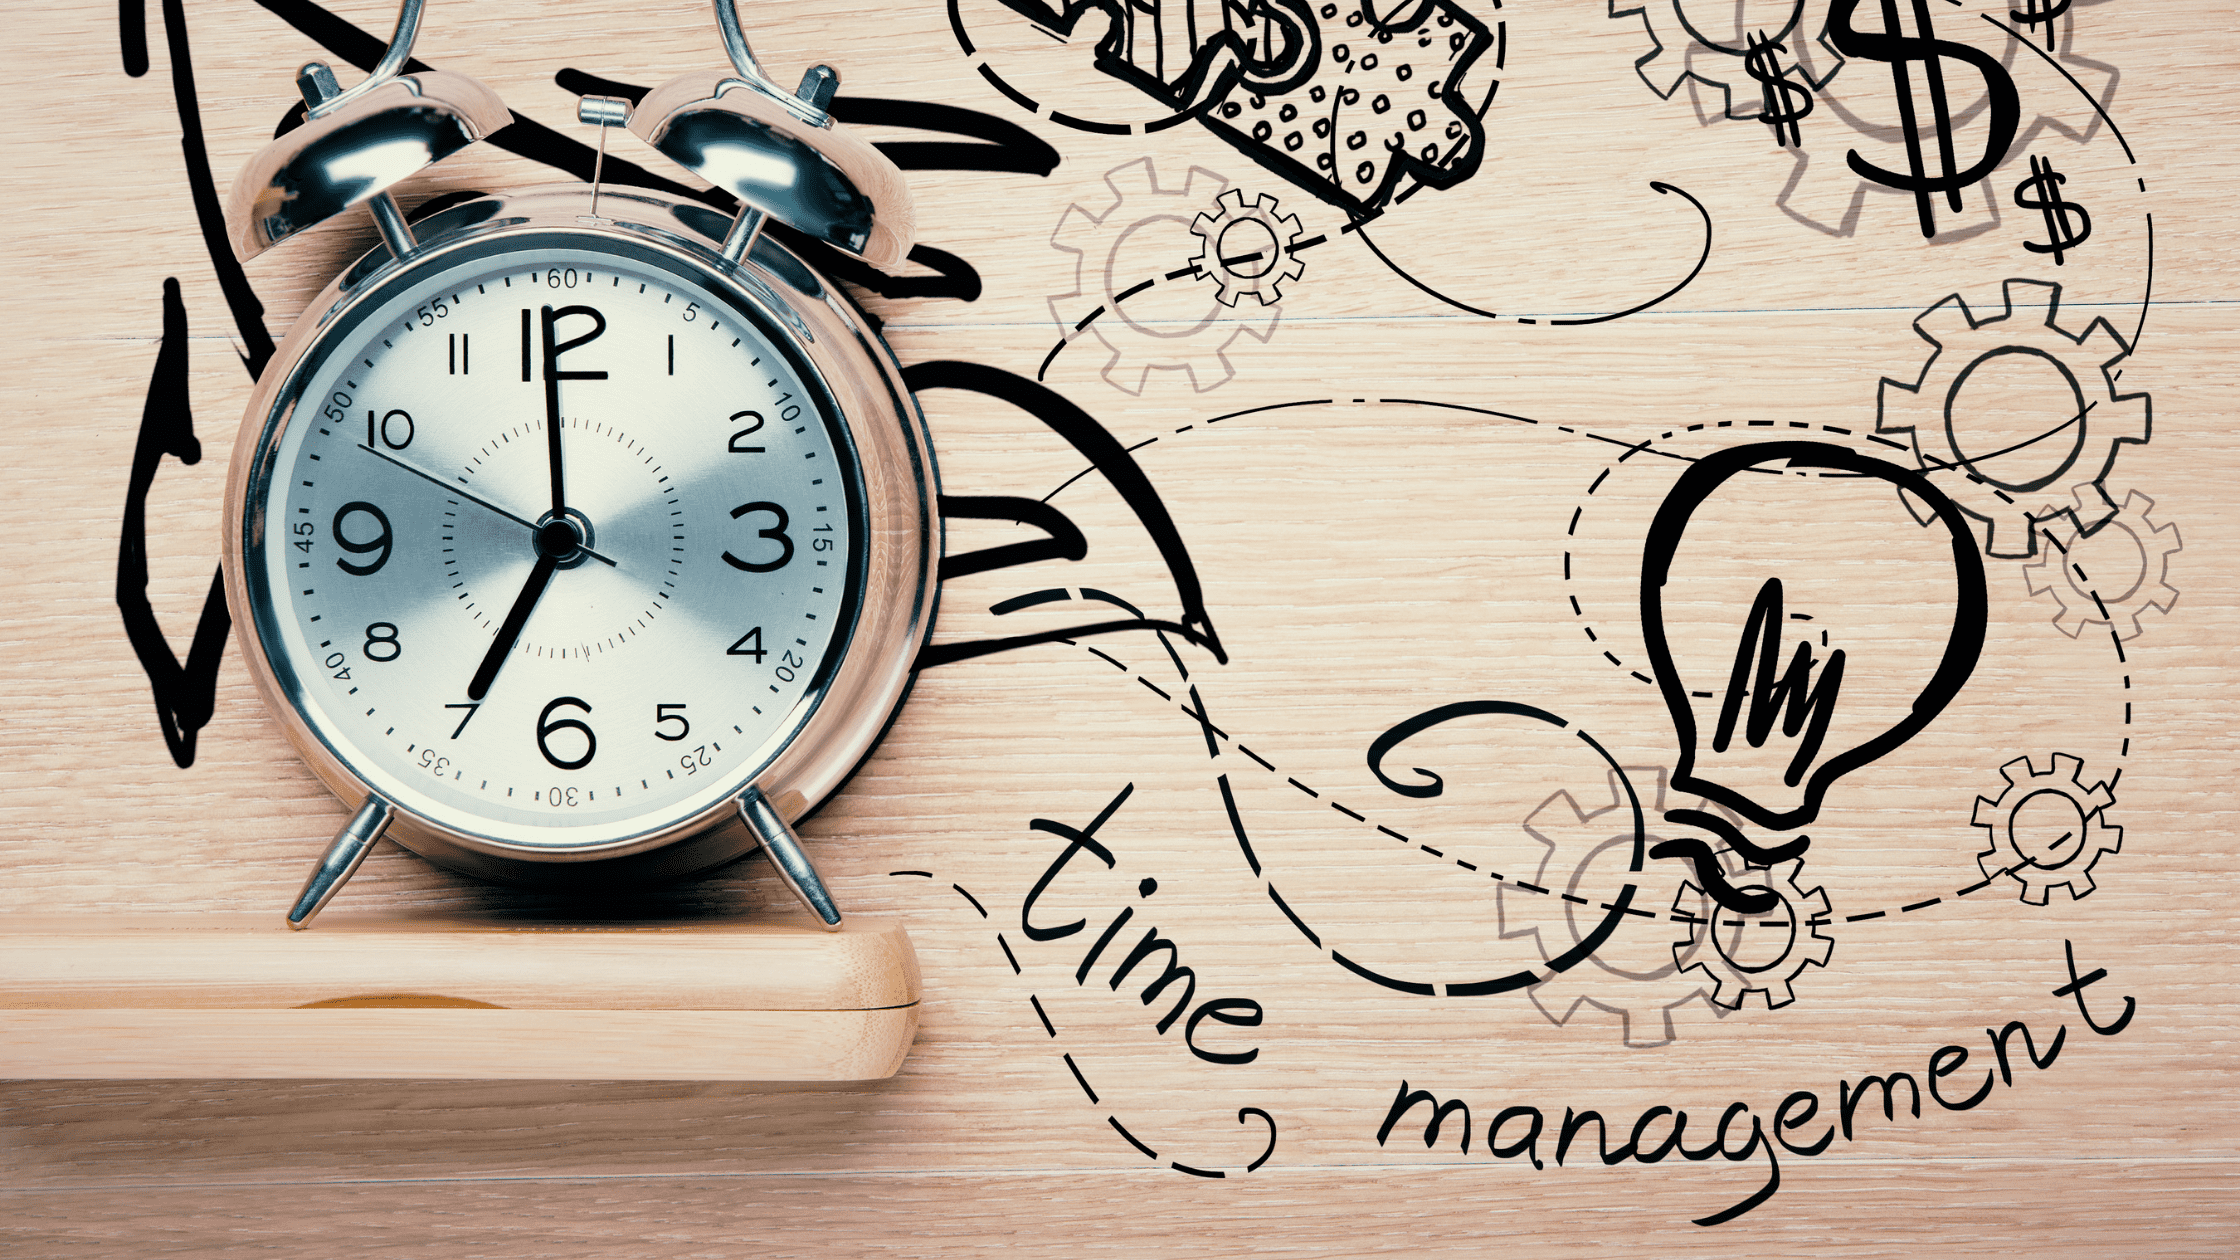 Zeitmanagement - Tipps für Autoren und Autorinnen - Bild von einer Uhr auf einem Regal. Dahinter ein Wand mit gezeichneten Elementen.